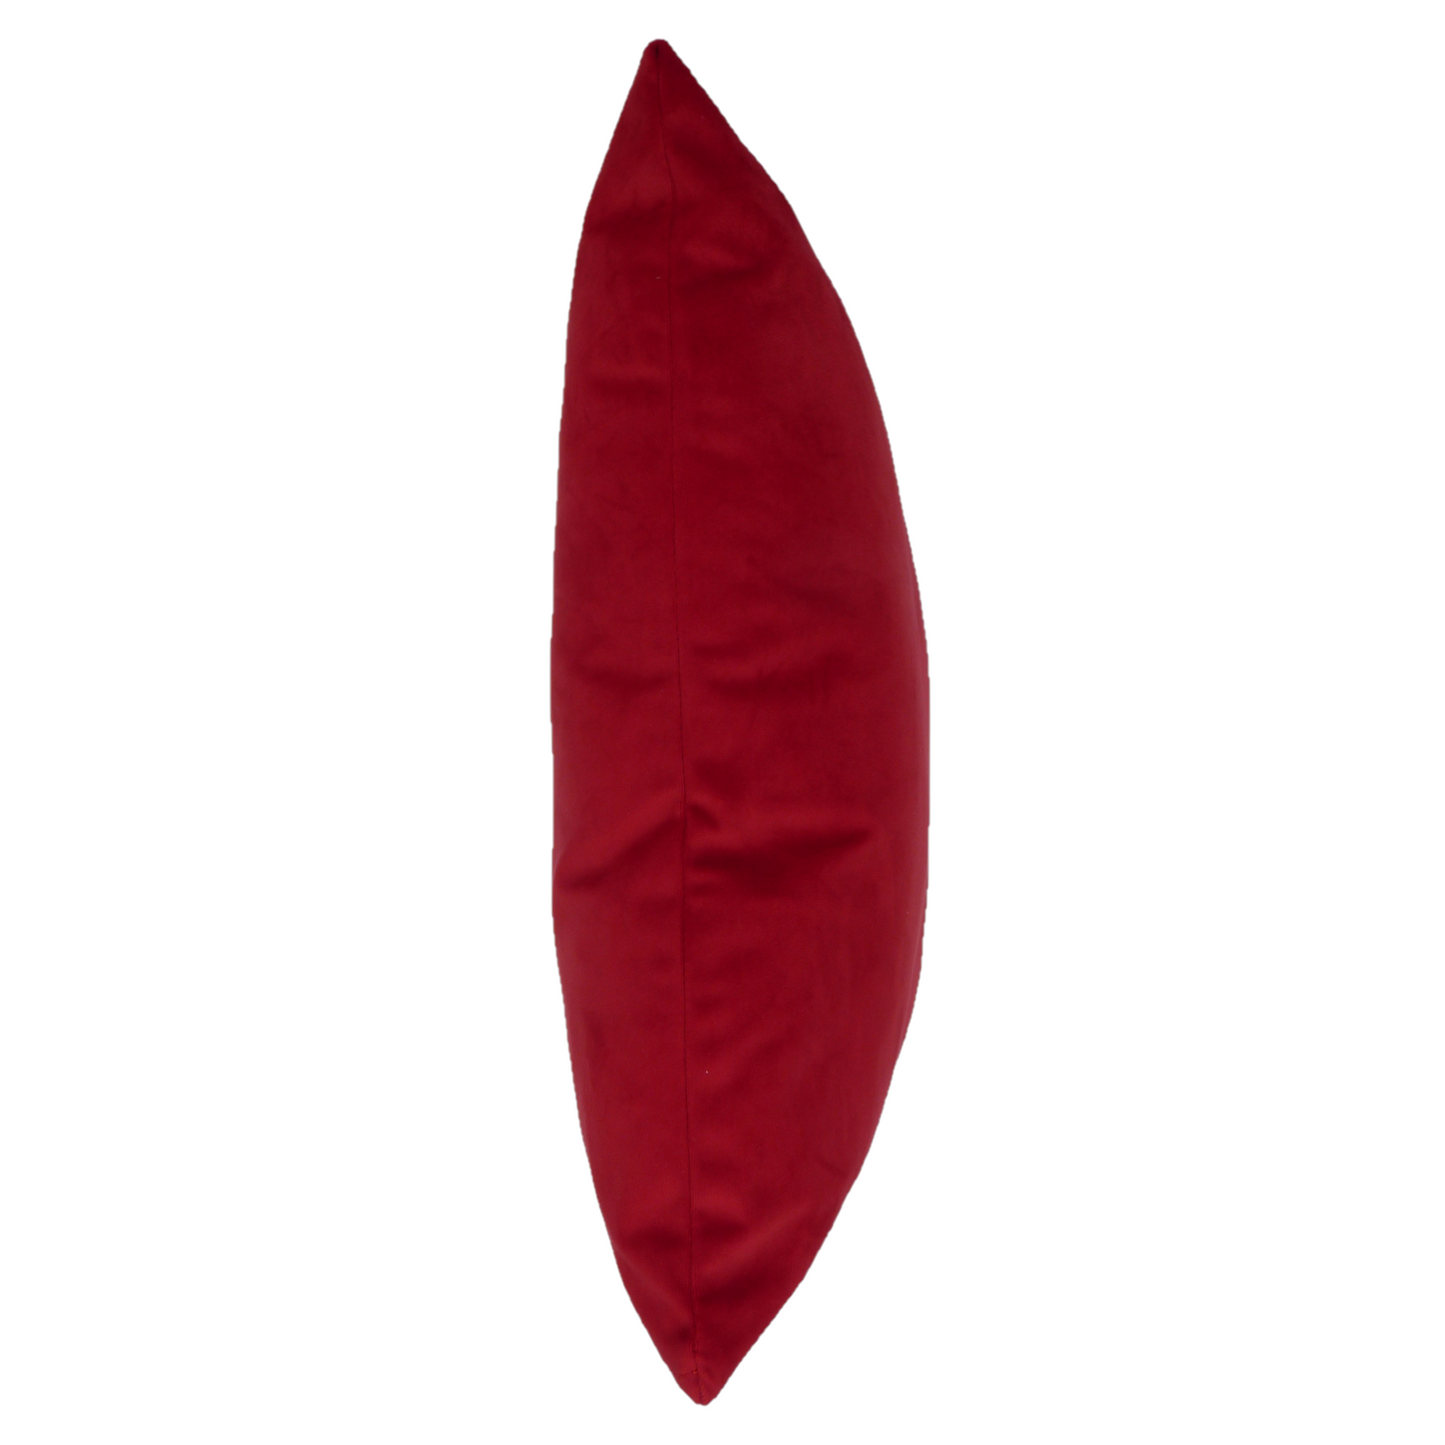 Opulence Scarlet Red Velvet Cushion Cover (50cm x 50cm)